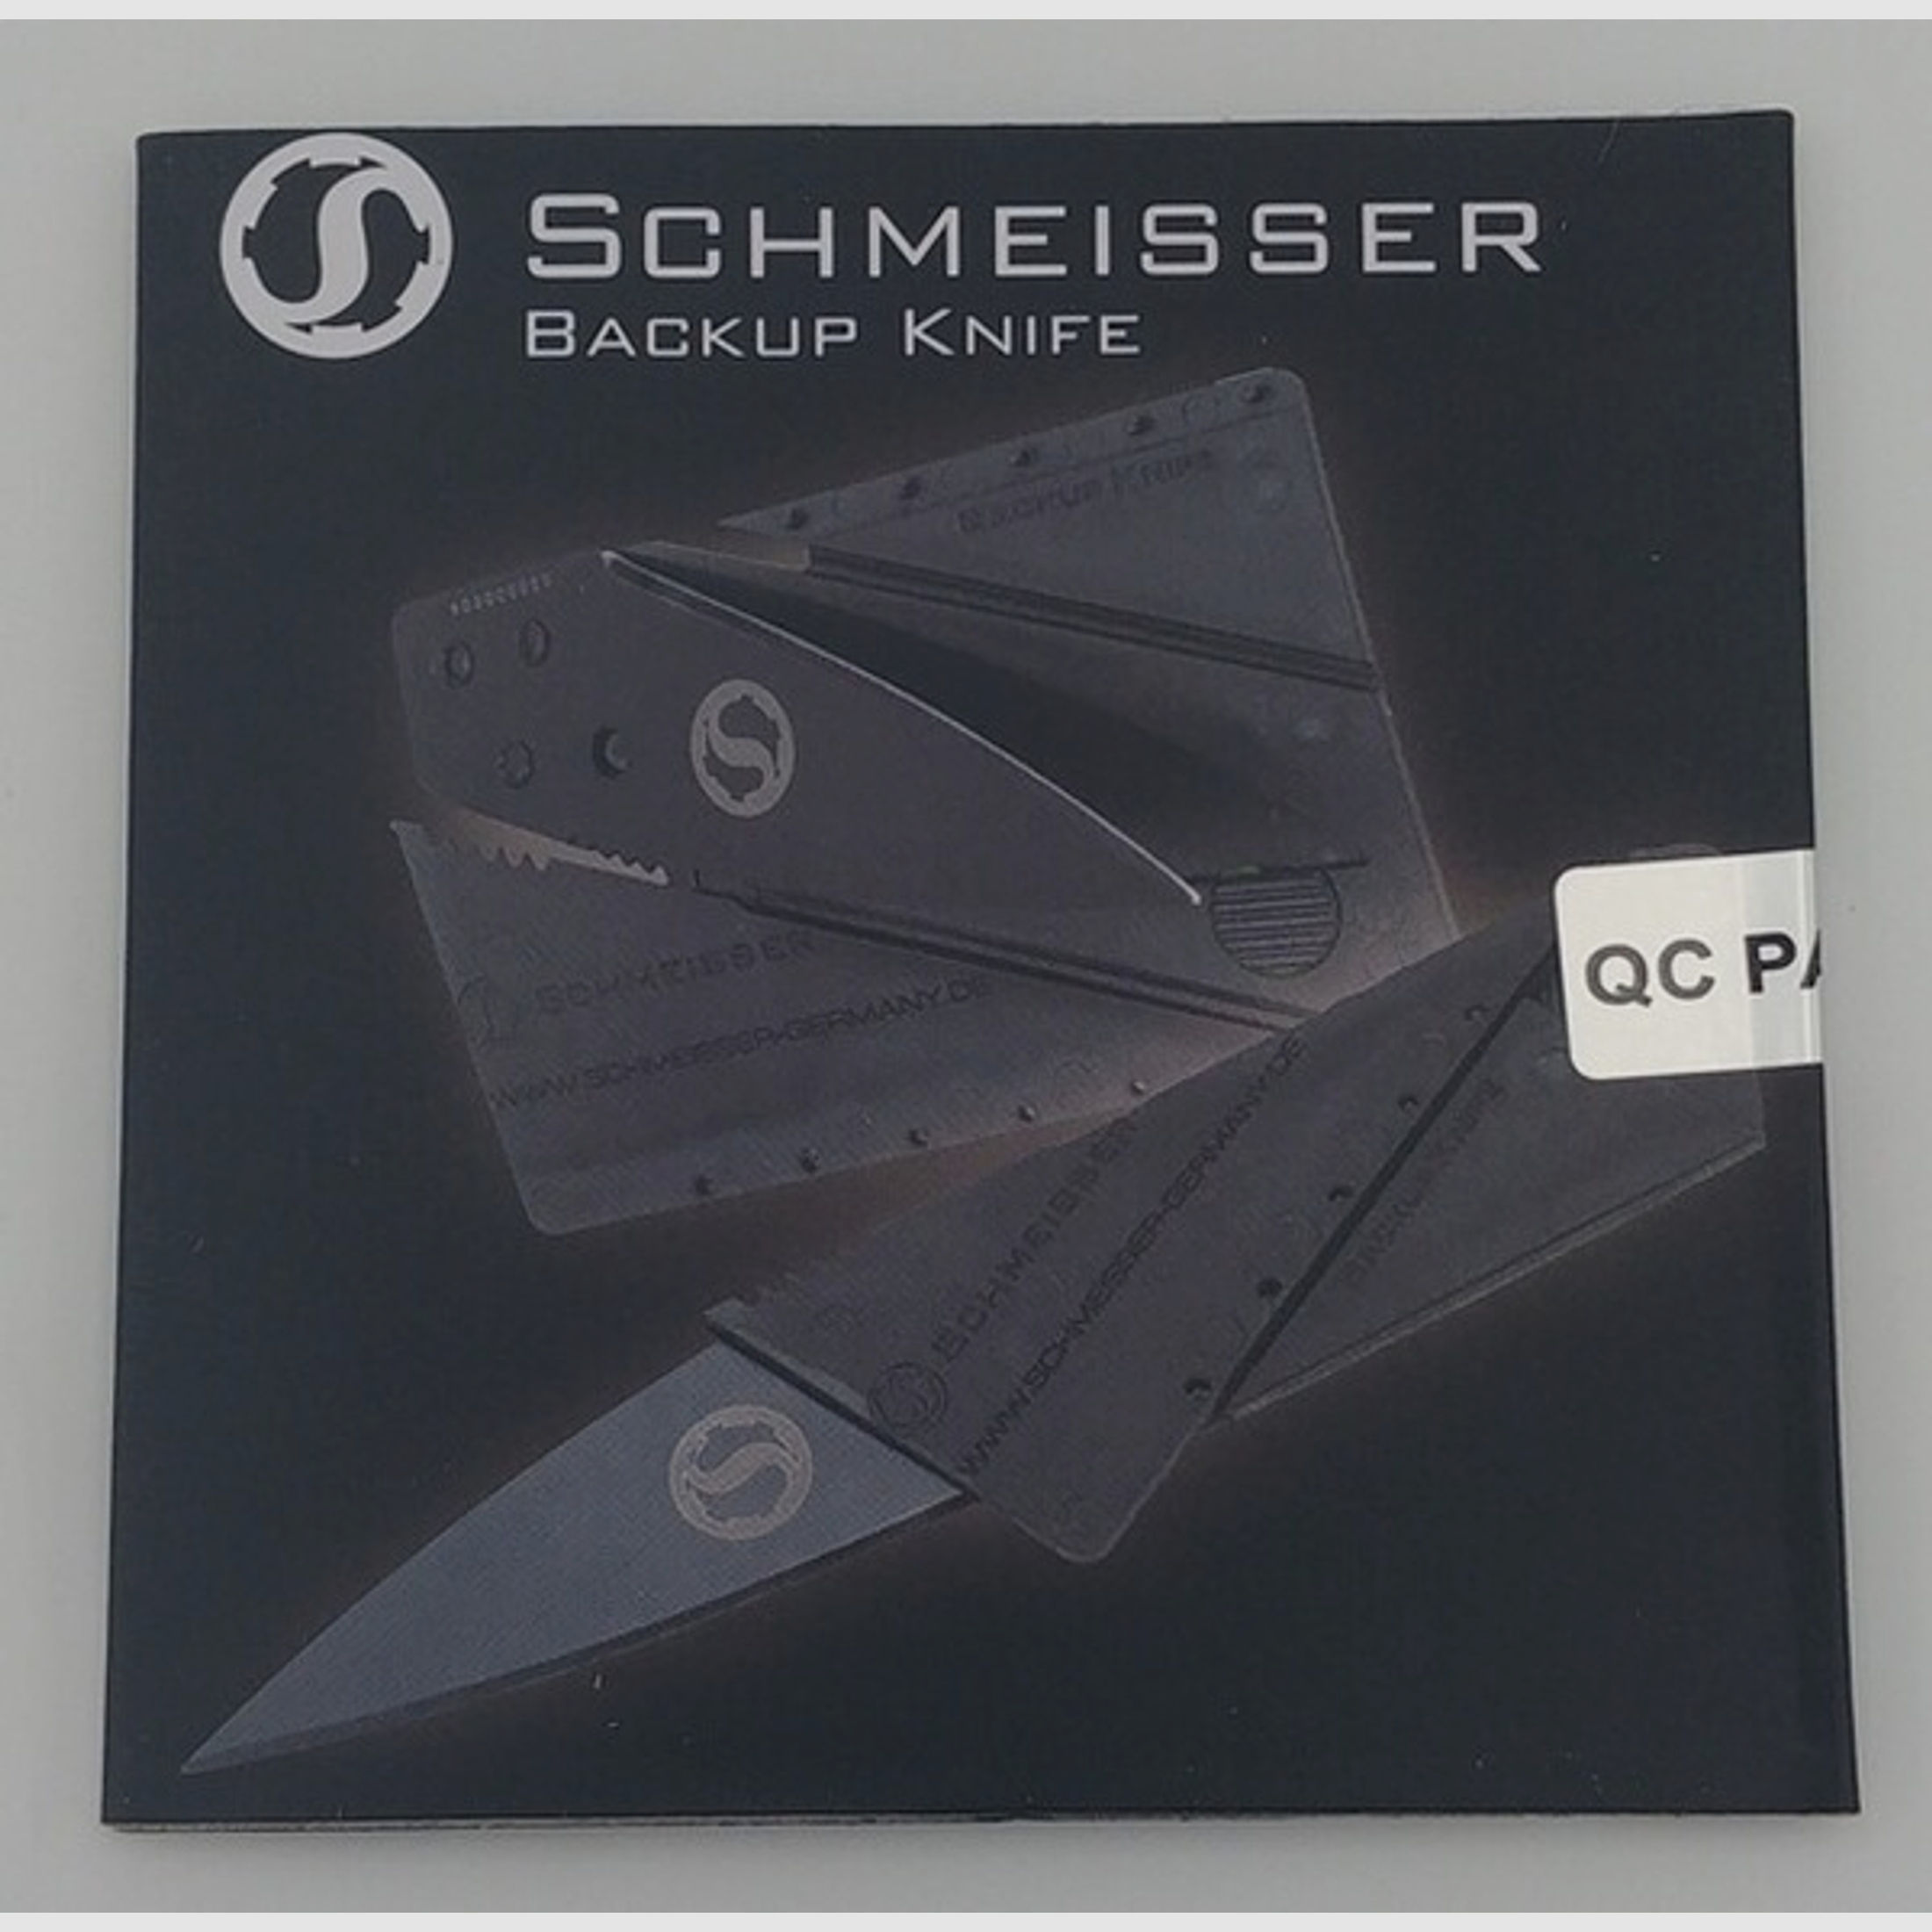 Schmeisser Backup Knife - Das Scheckkartenmesser